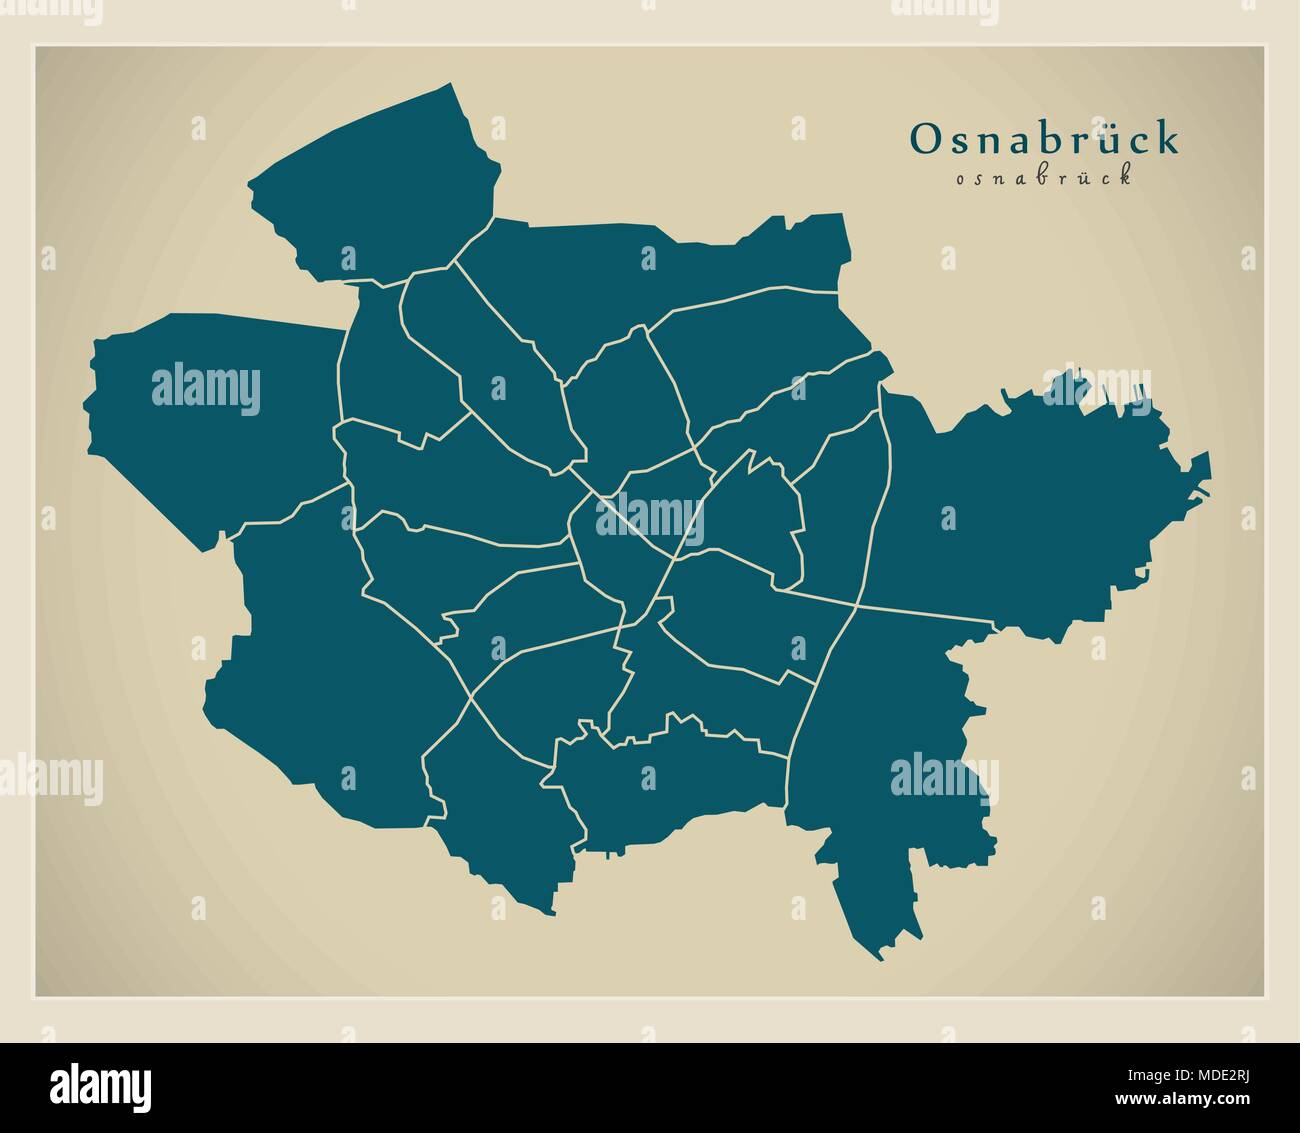 Città moderna mappa - Osnabruck città della Germania con il distretto DE Illustrazione Vettoriale